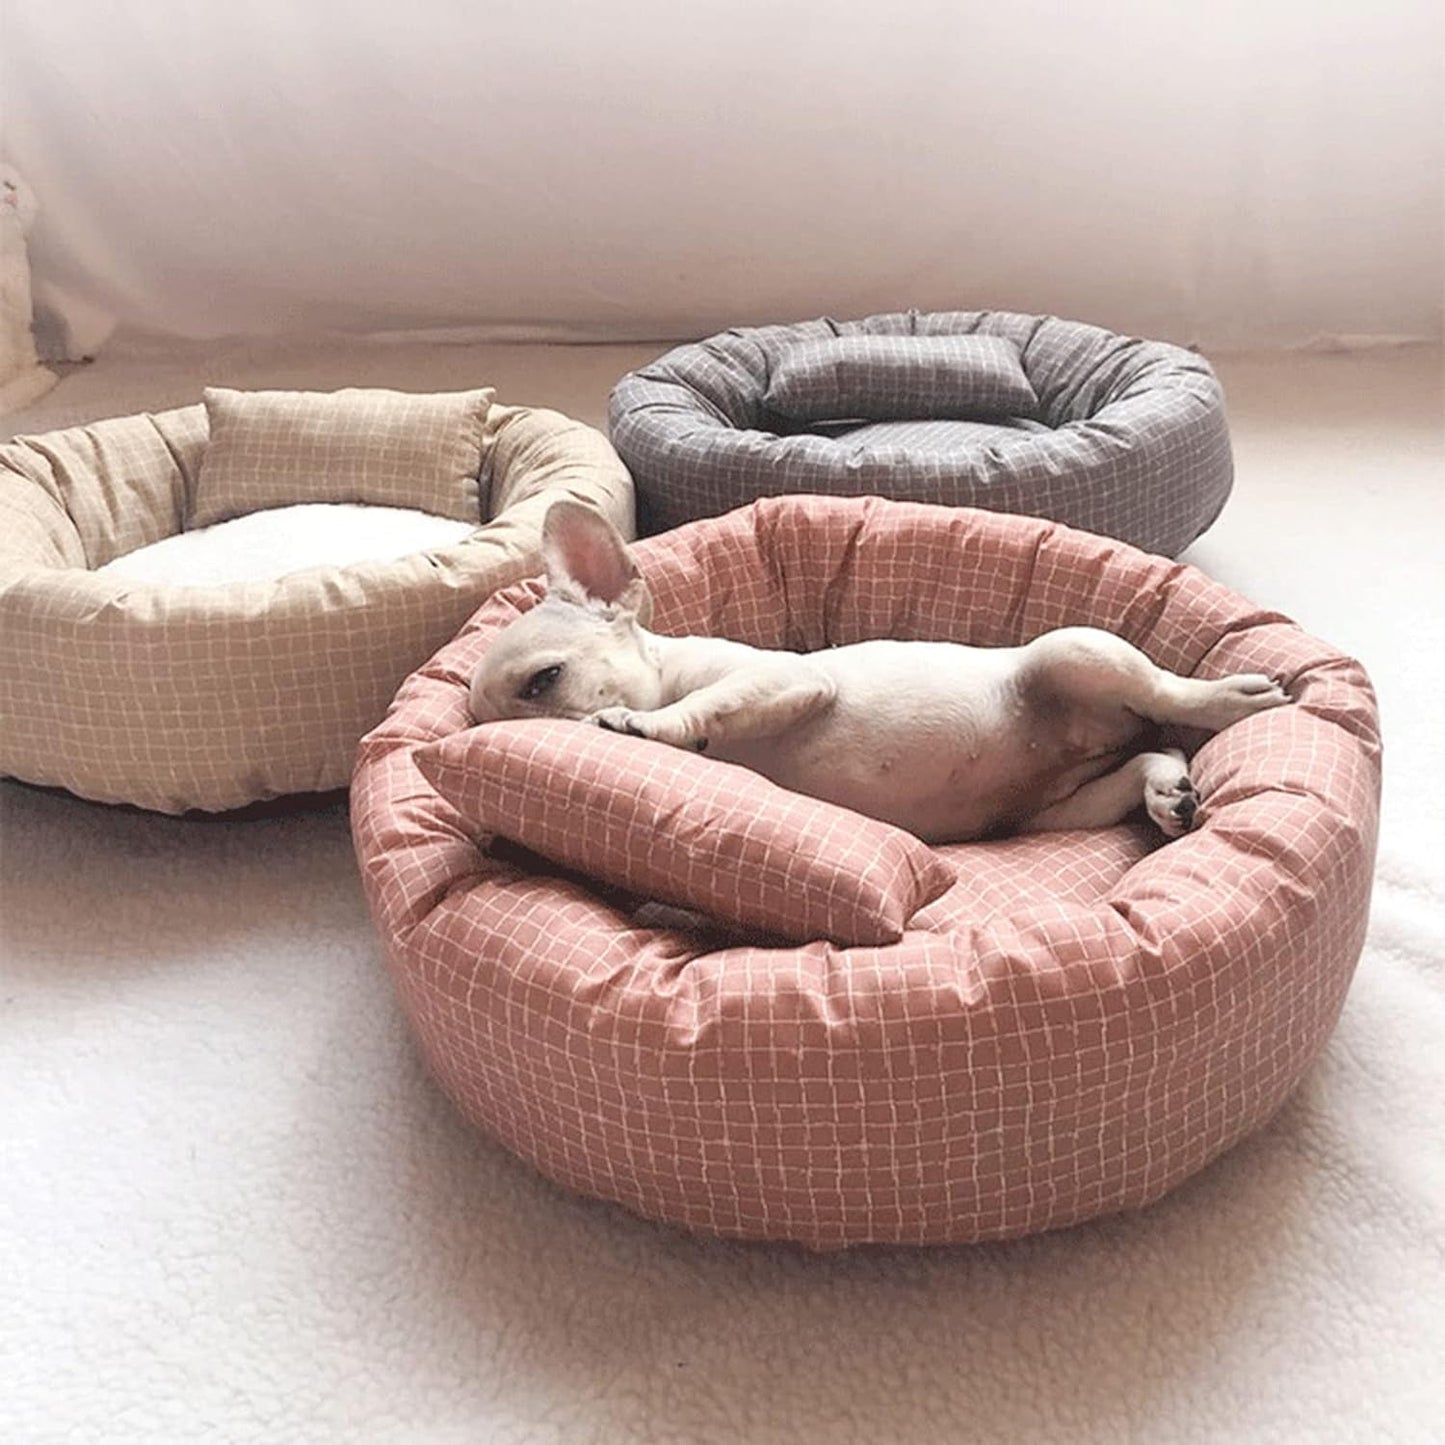 Plaid Comfy Pet Bed